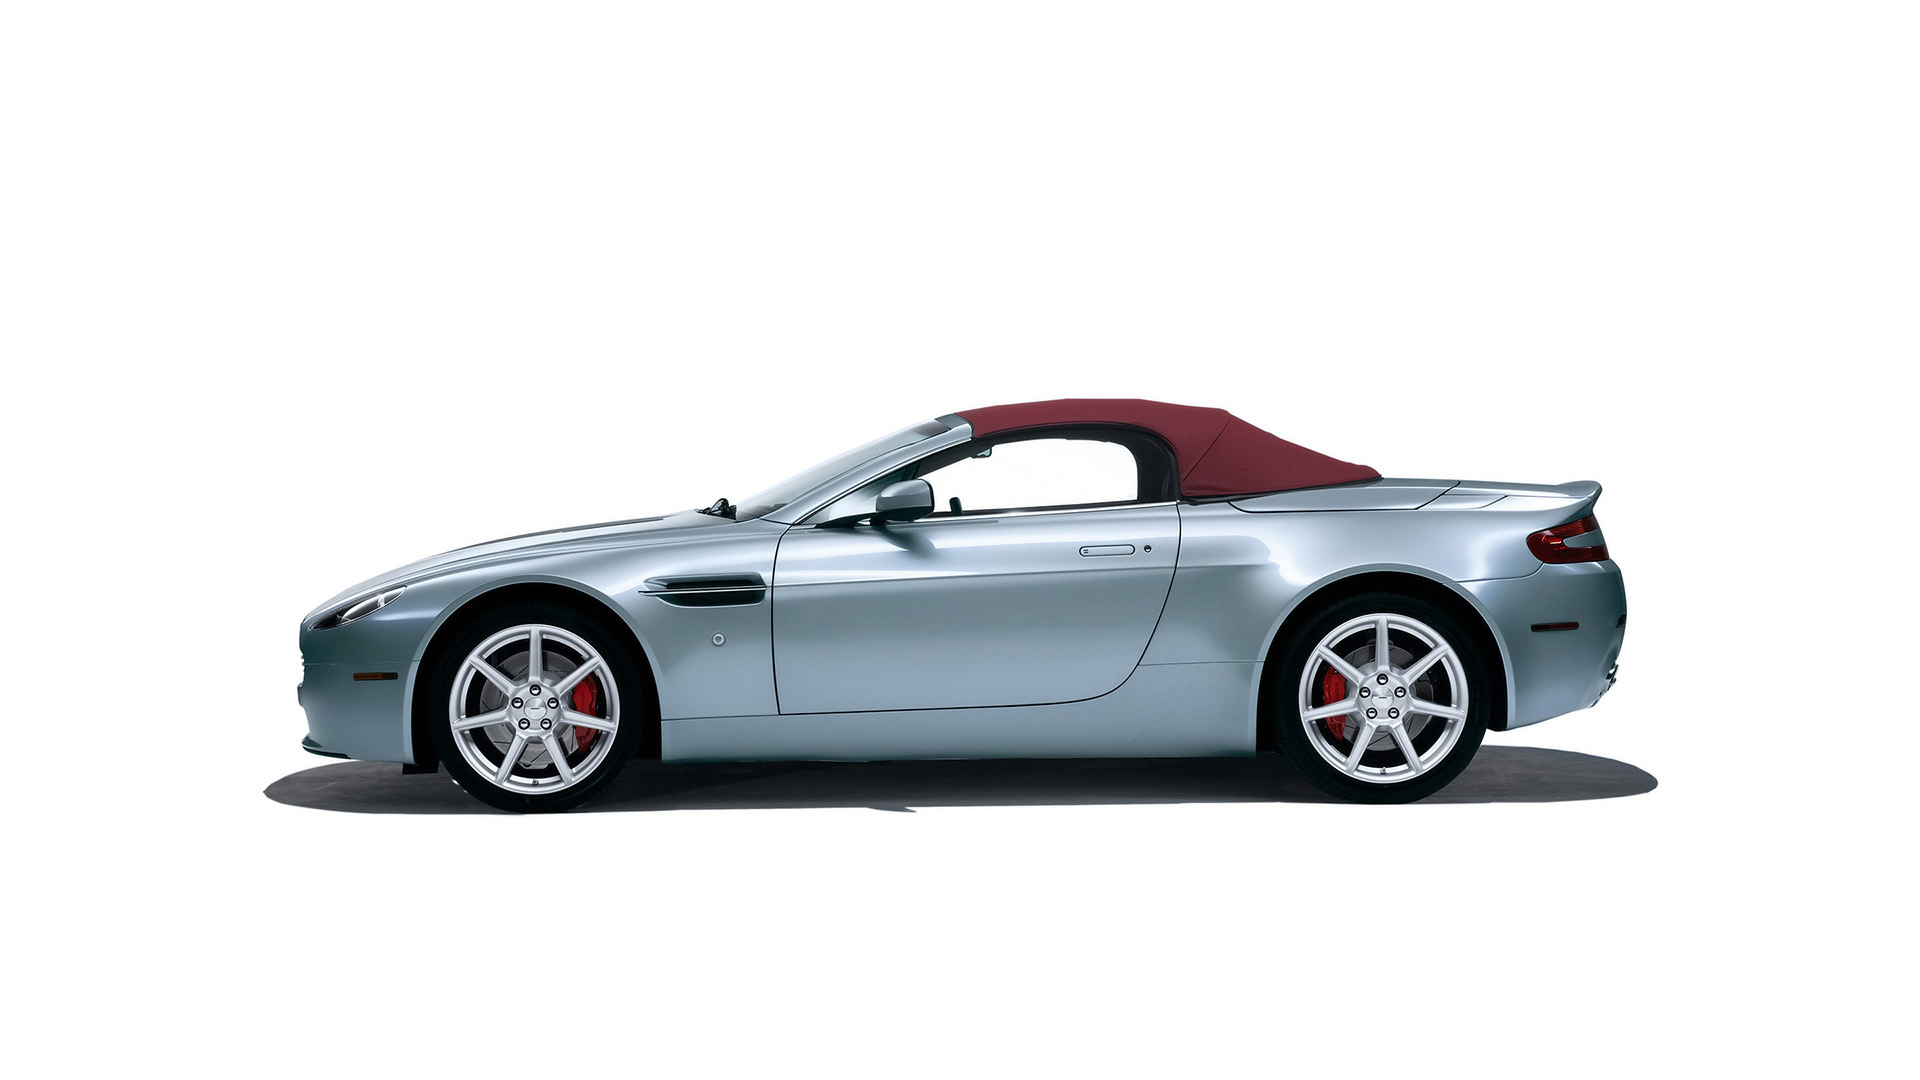  2006 Aston Martin V8 Vantage Wallpaper.